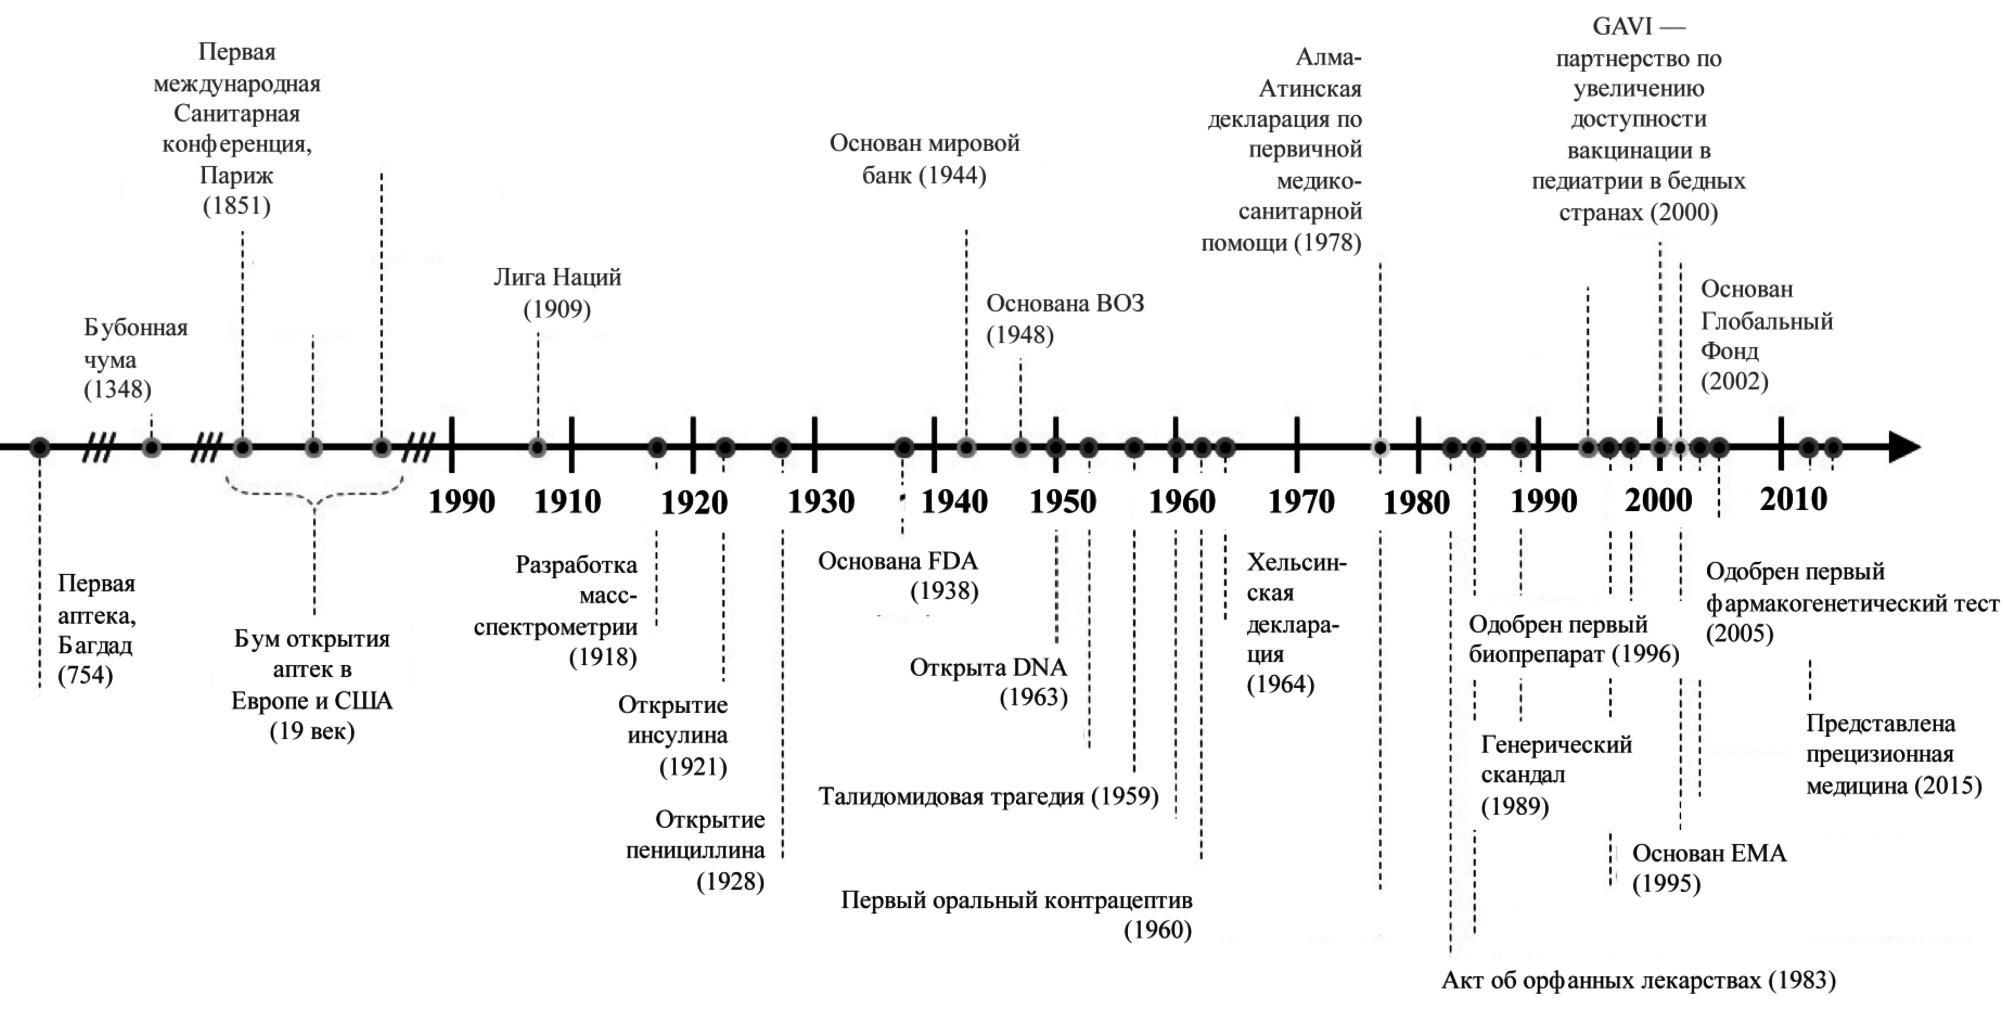 Хронология событий, определяющих фармацевтическую индустрию в современную эпоху